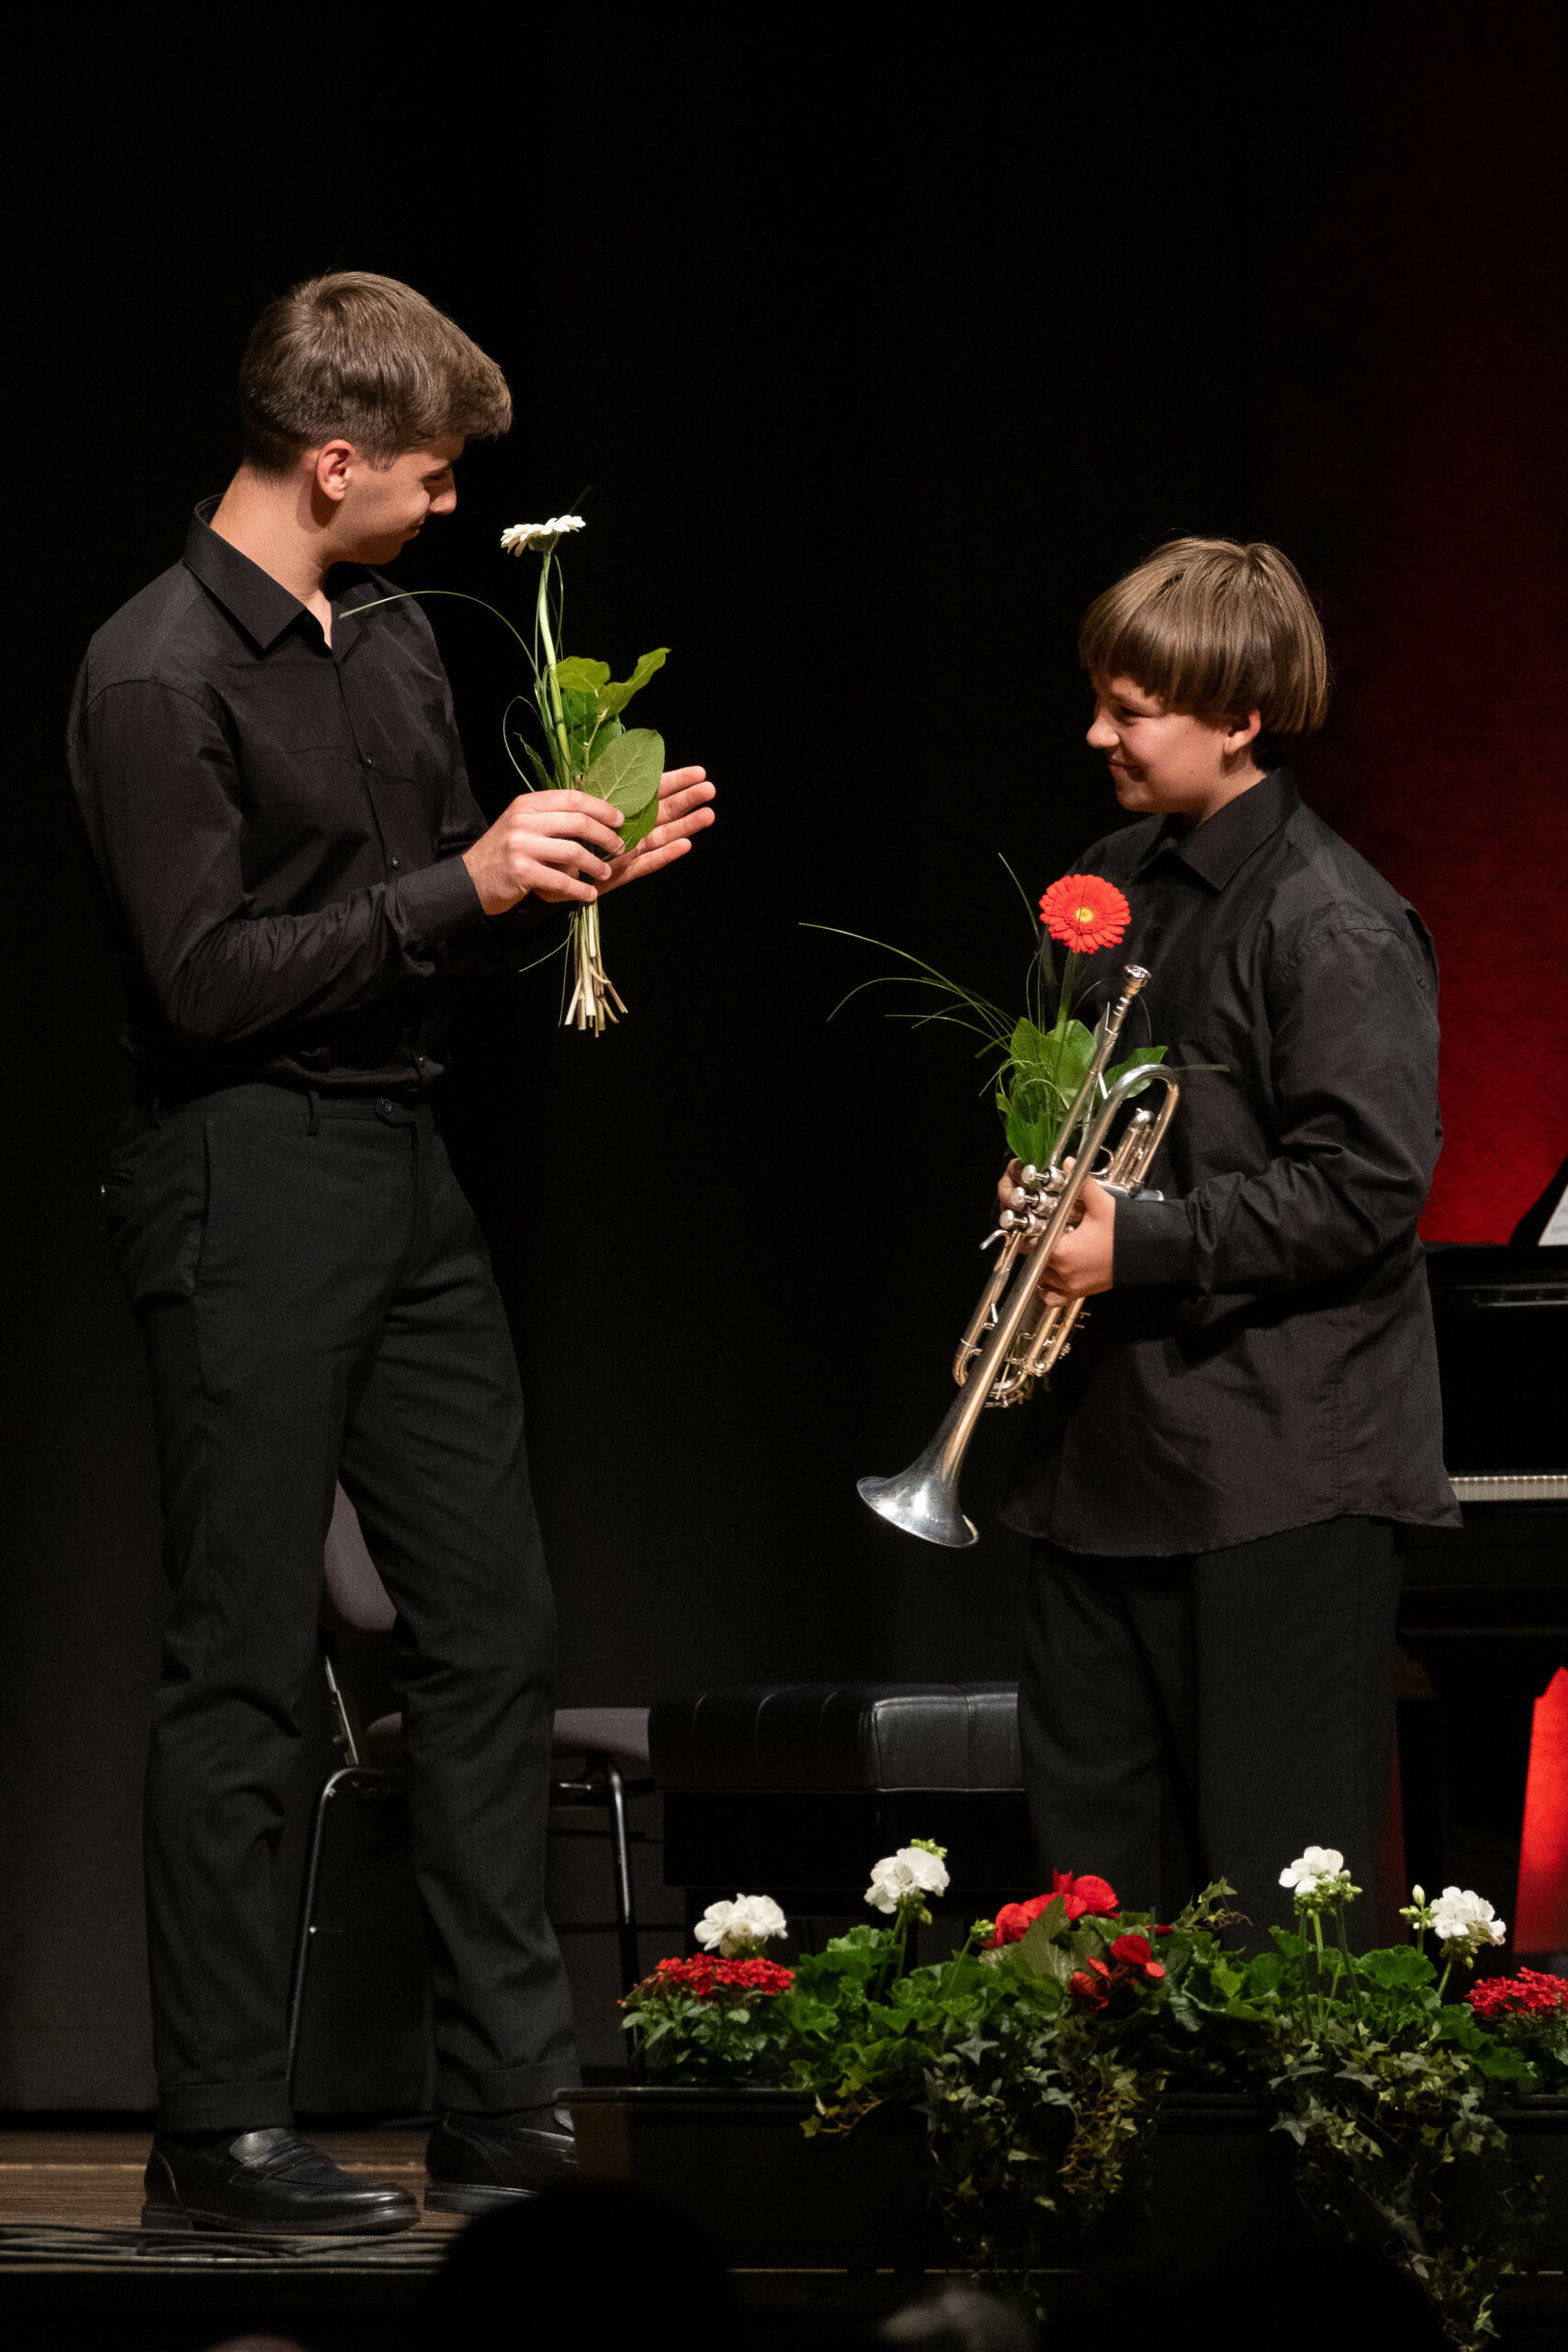 Der Bundeswettbewerb Jugend musiziert Fördert nicht nur Talente, sondern schafft auch zwischenmenschliche Begegnungen © Sivani Boxall/DMR